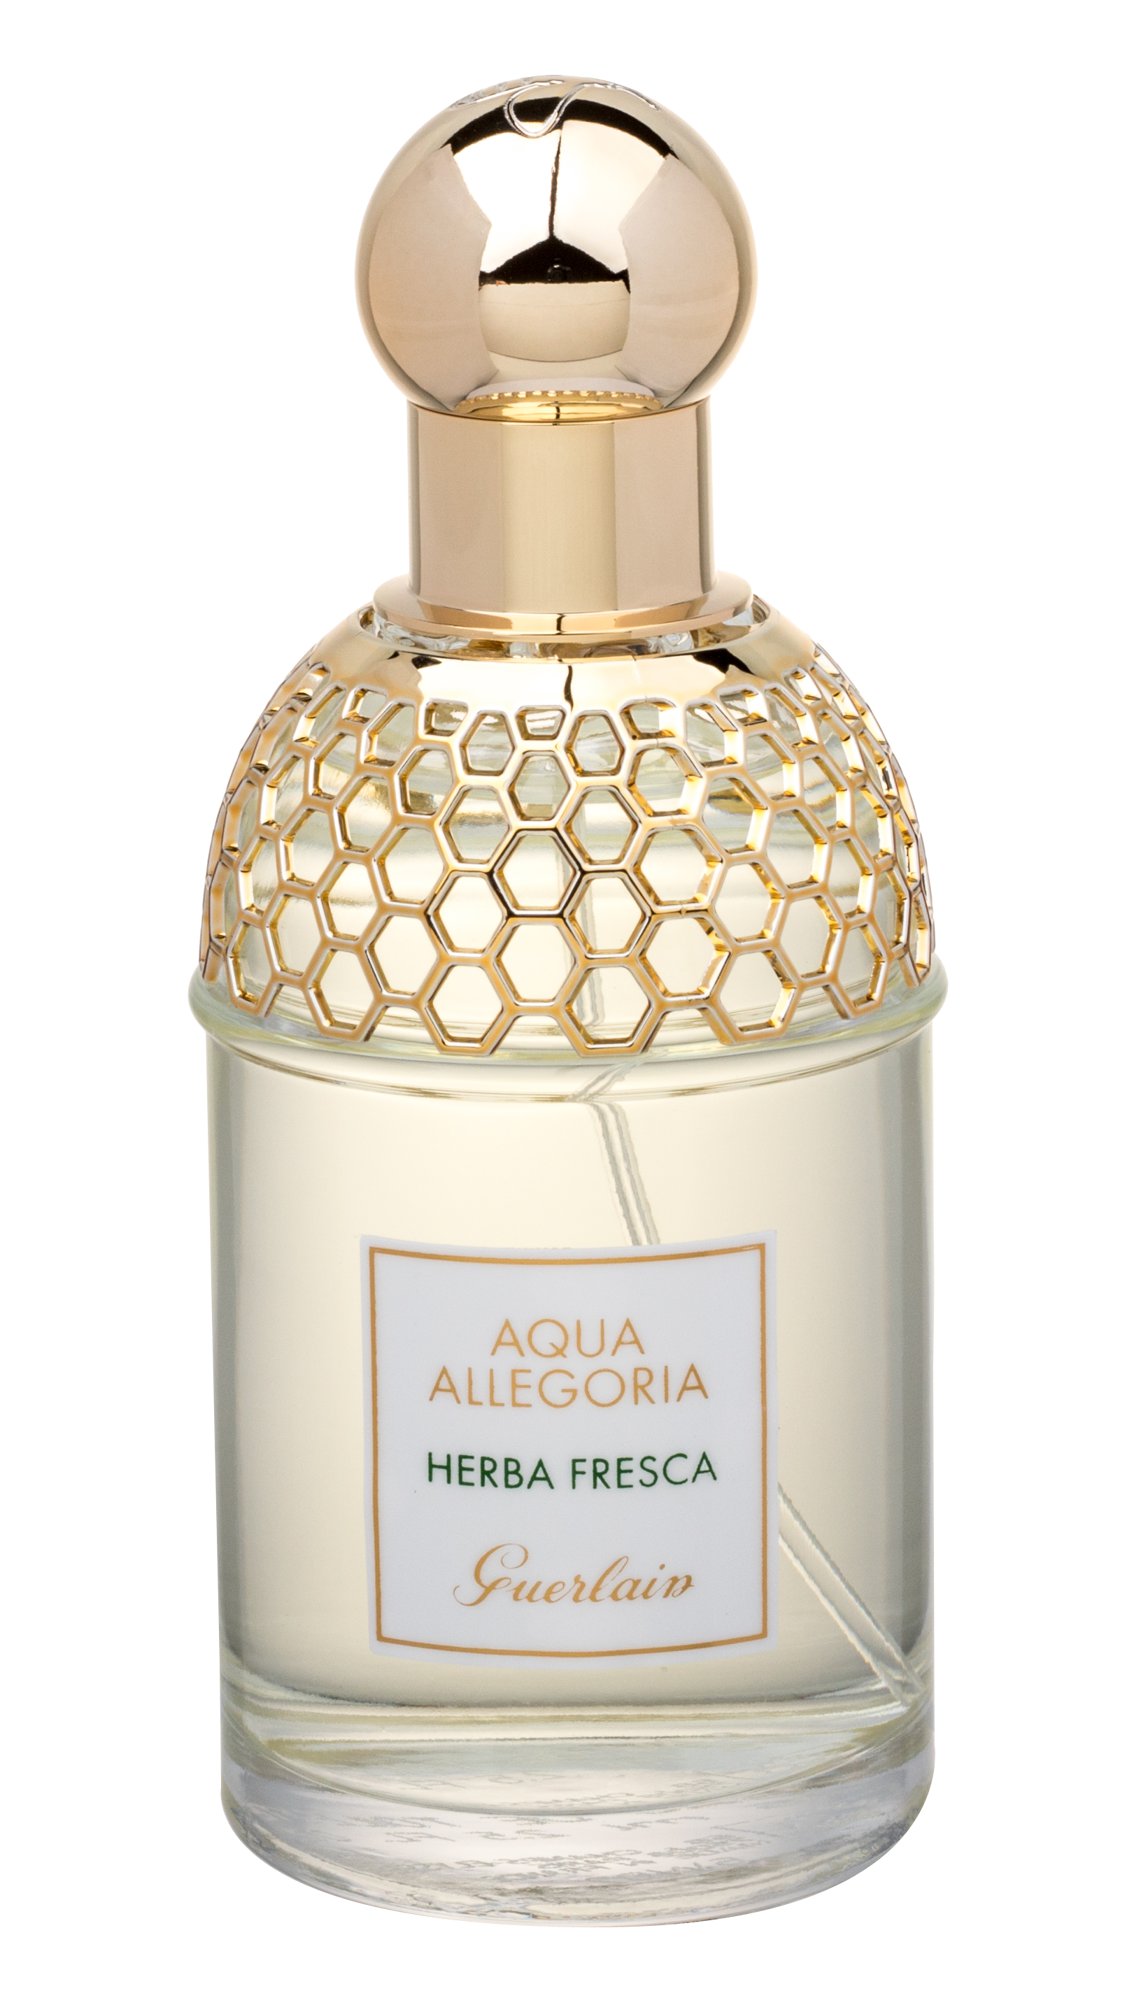 Guerlain Aqua Allegoria Herba Fresca, EDT 75ml